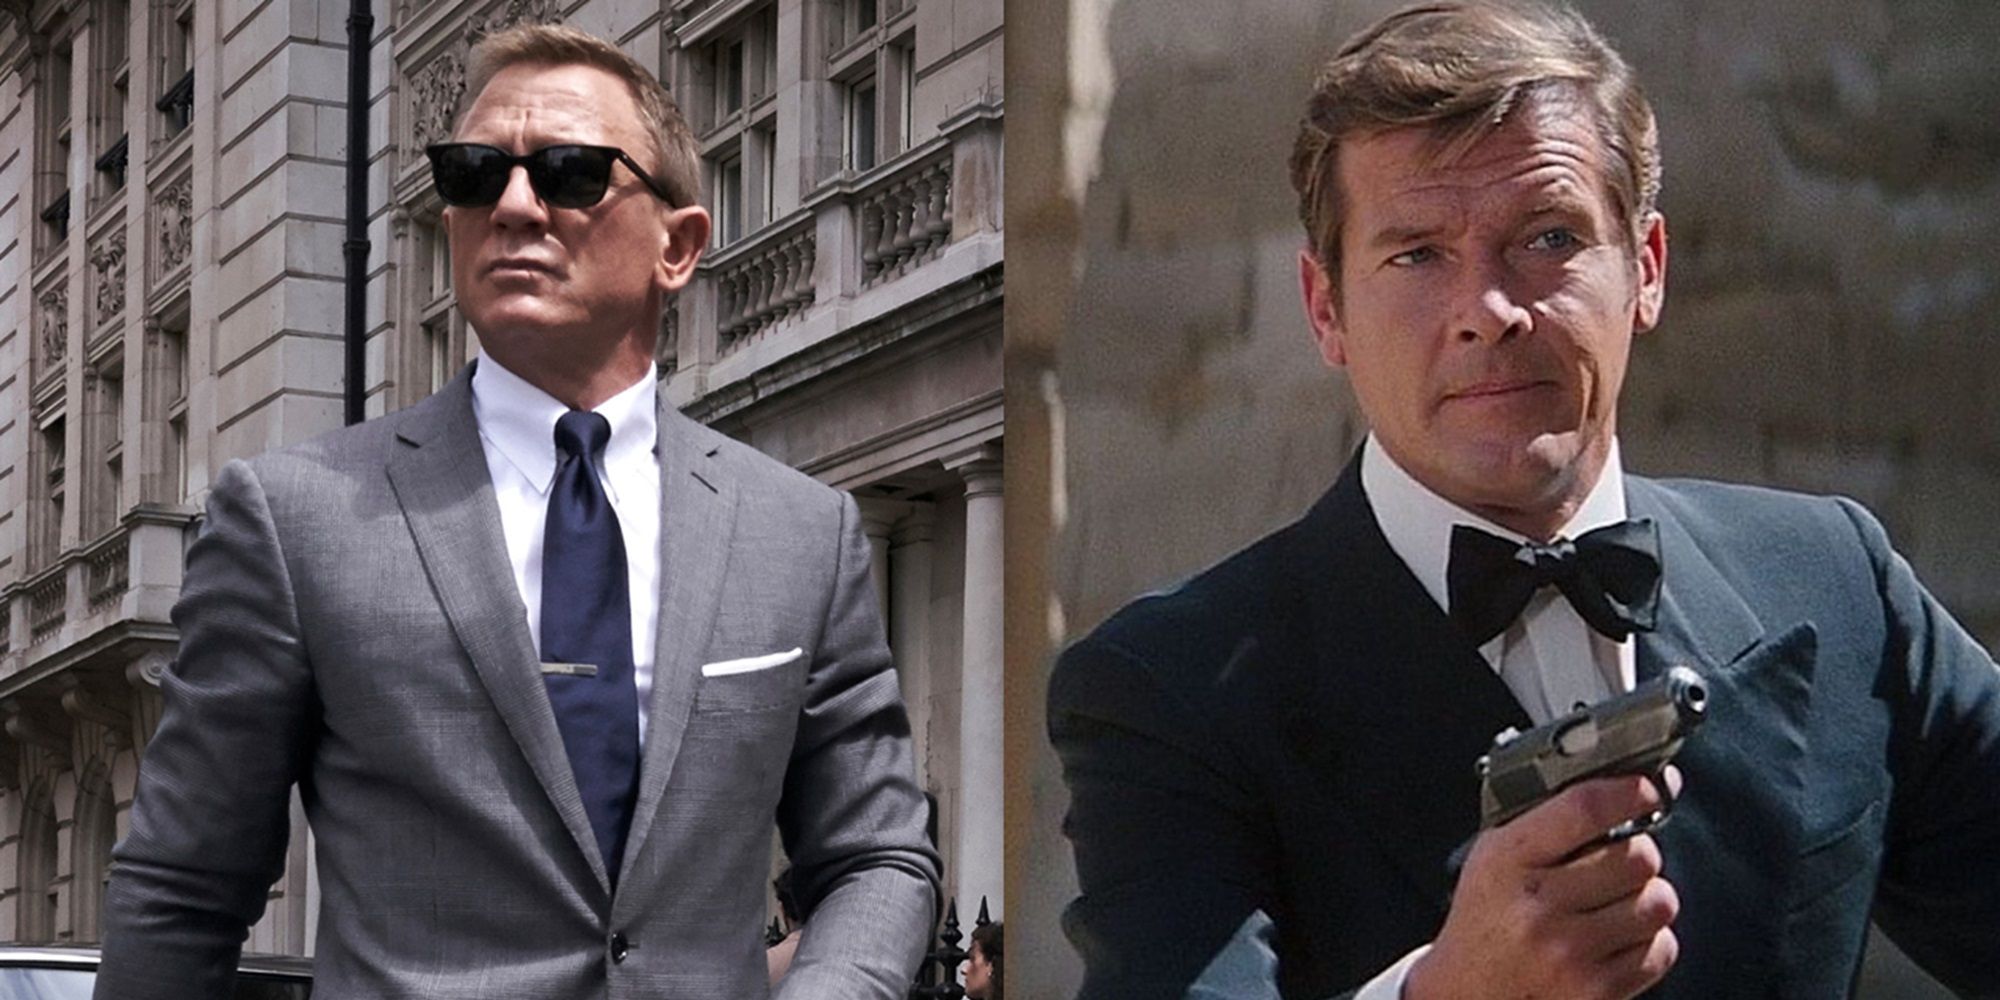 De volgende incarnatie van de Bond-franchise zou inspiratie moeten halen uit het Roger Moore-tijdperk